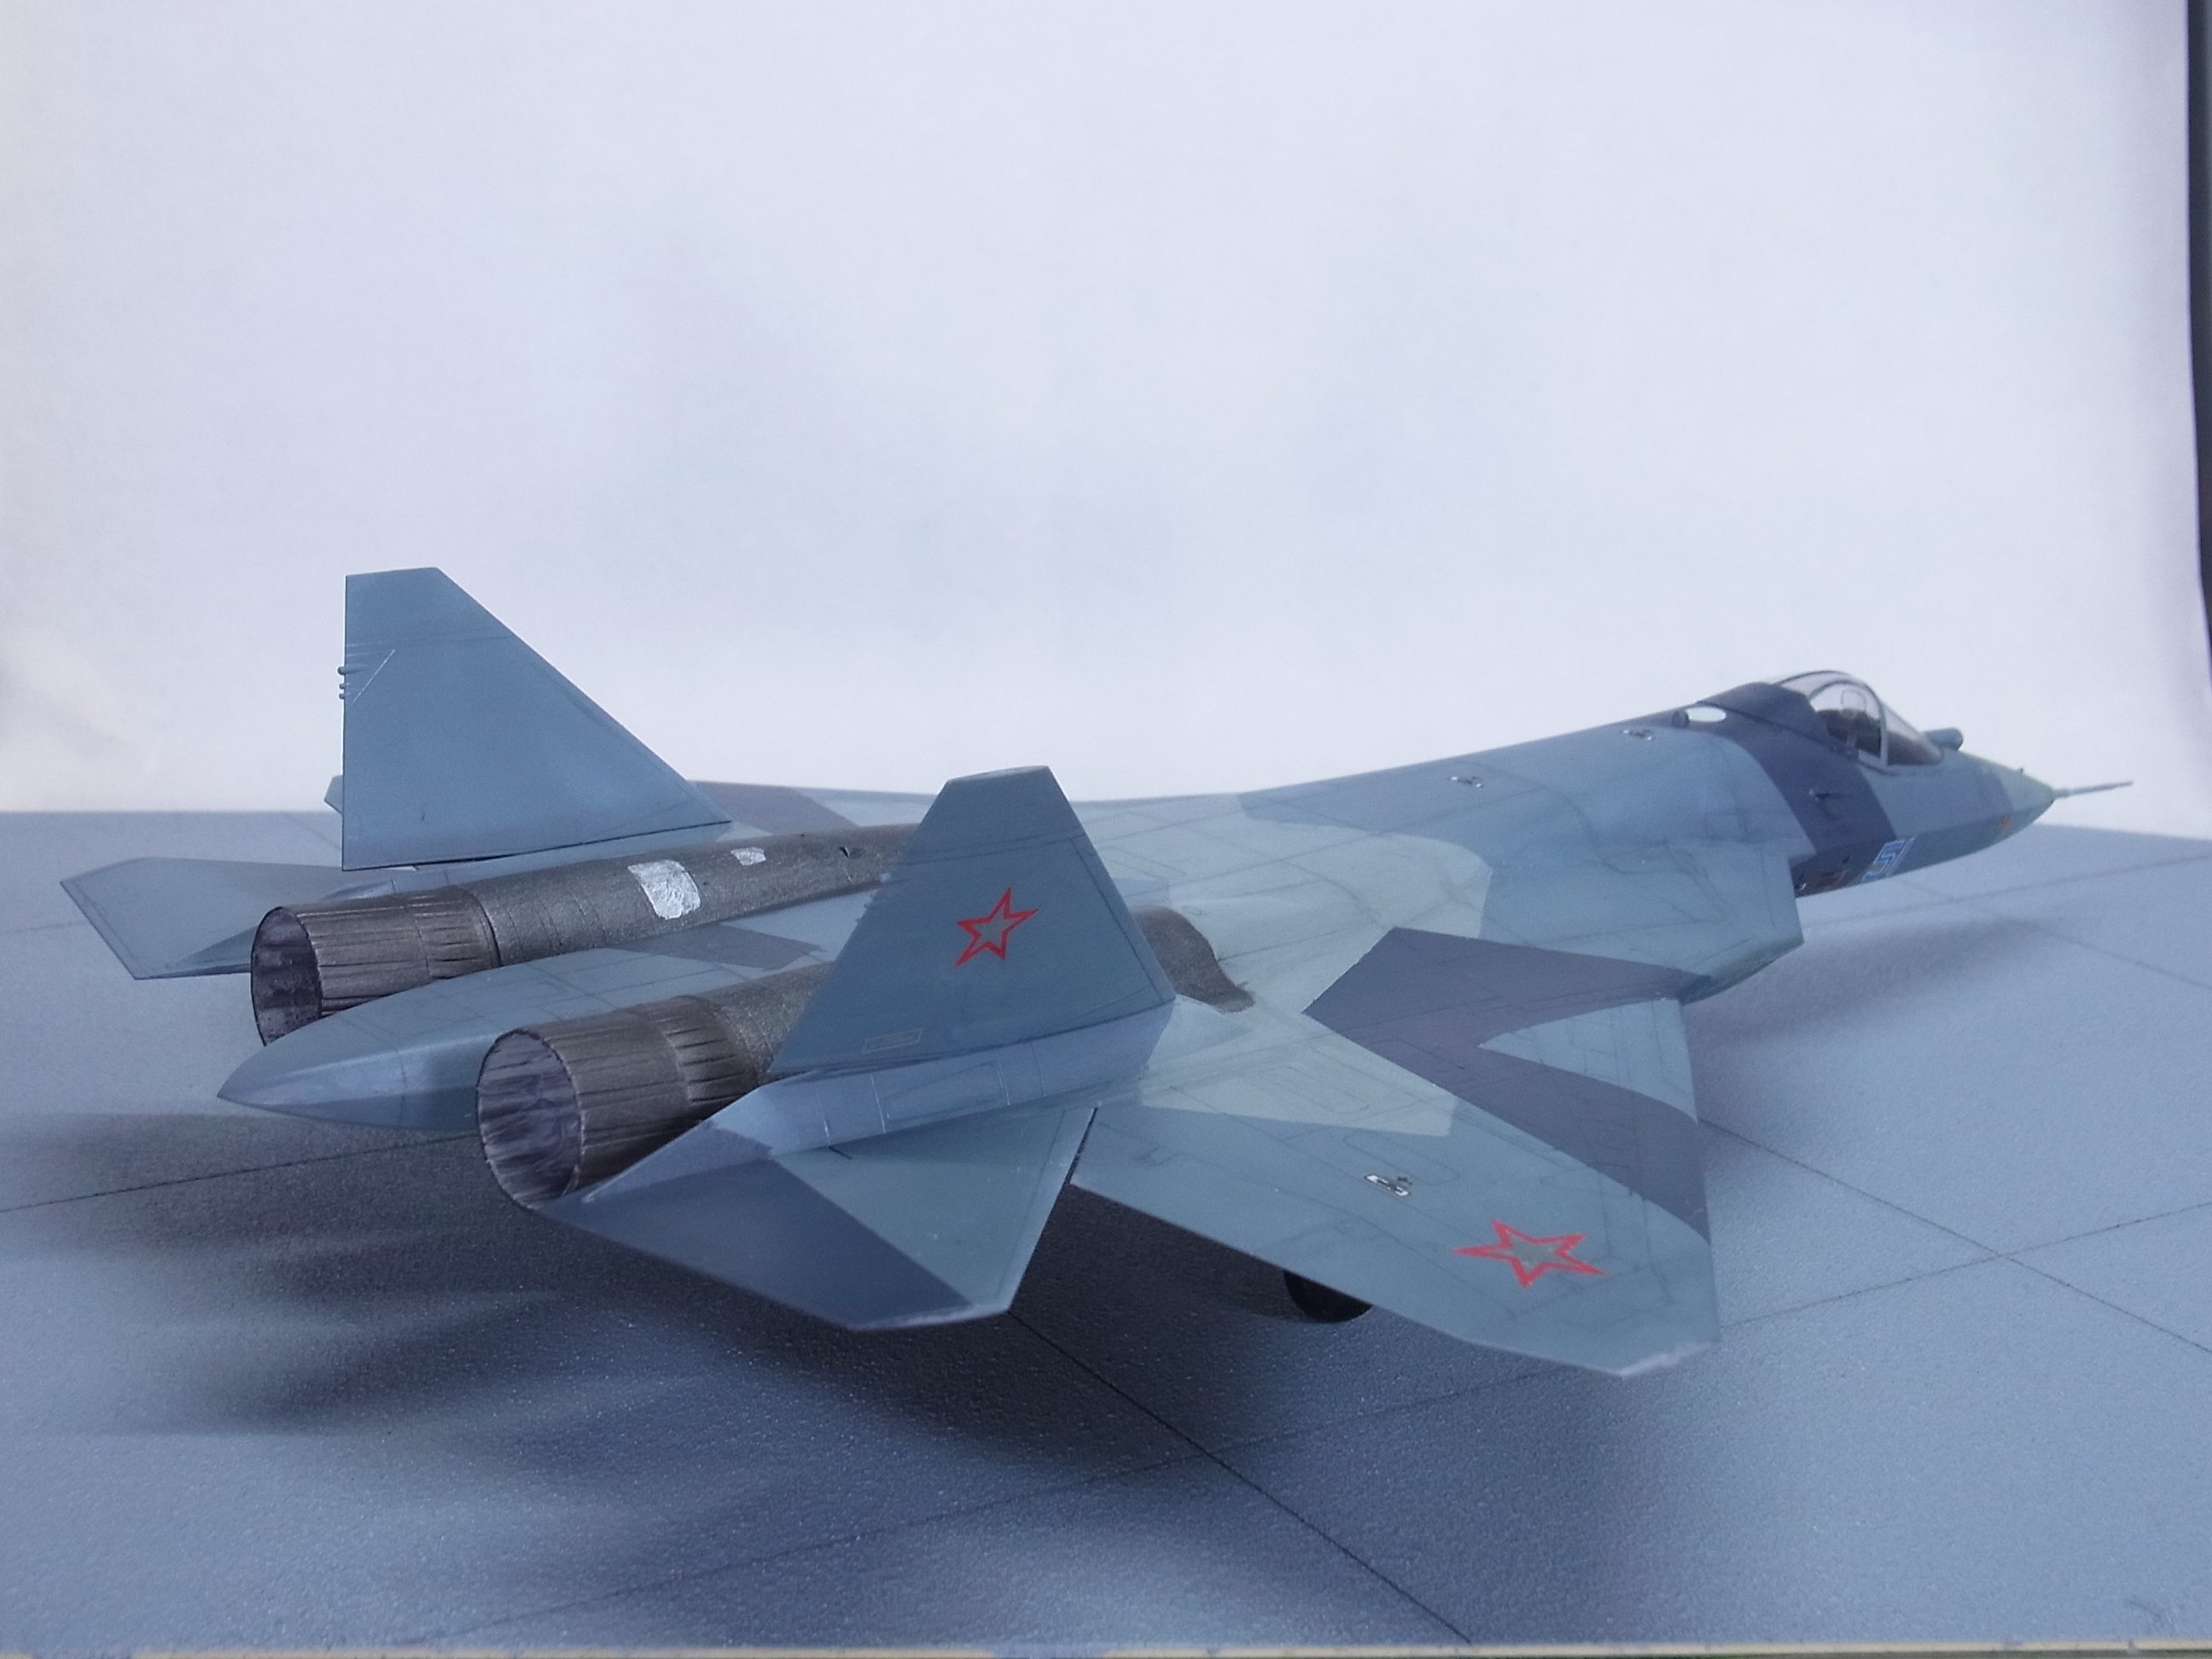 Orb モソモソモデラーモドキ 完成 ロシア空軍試作戦闘機 スホーイ T 50 Pak Fa Zvezda1 72 現用 機の製作は年振りくらいで勝手が掴めず難航したが 塗装はいつも通り水性アクリル筆塗り 水性ペンで そこそこ納得のいくものに出来たと思う